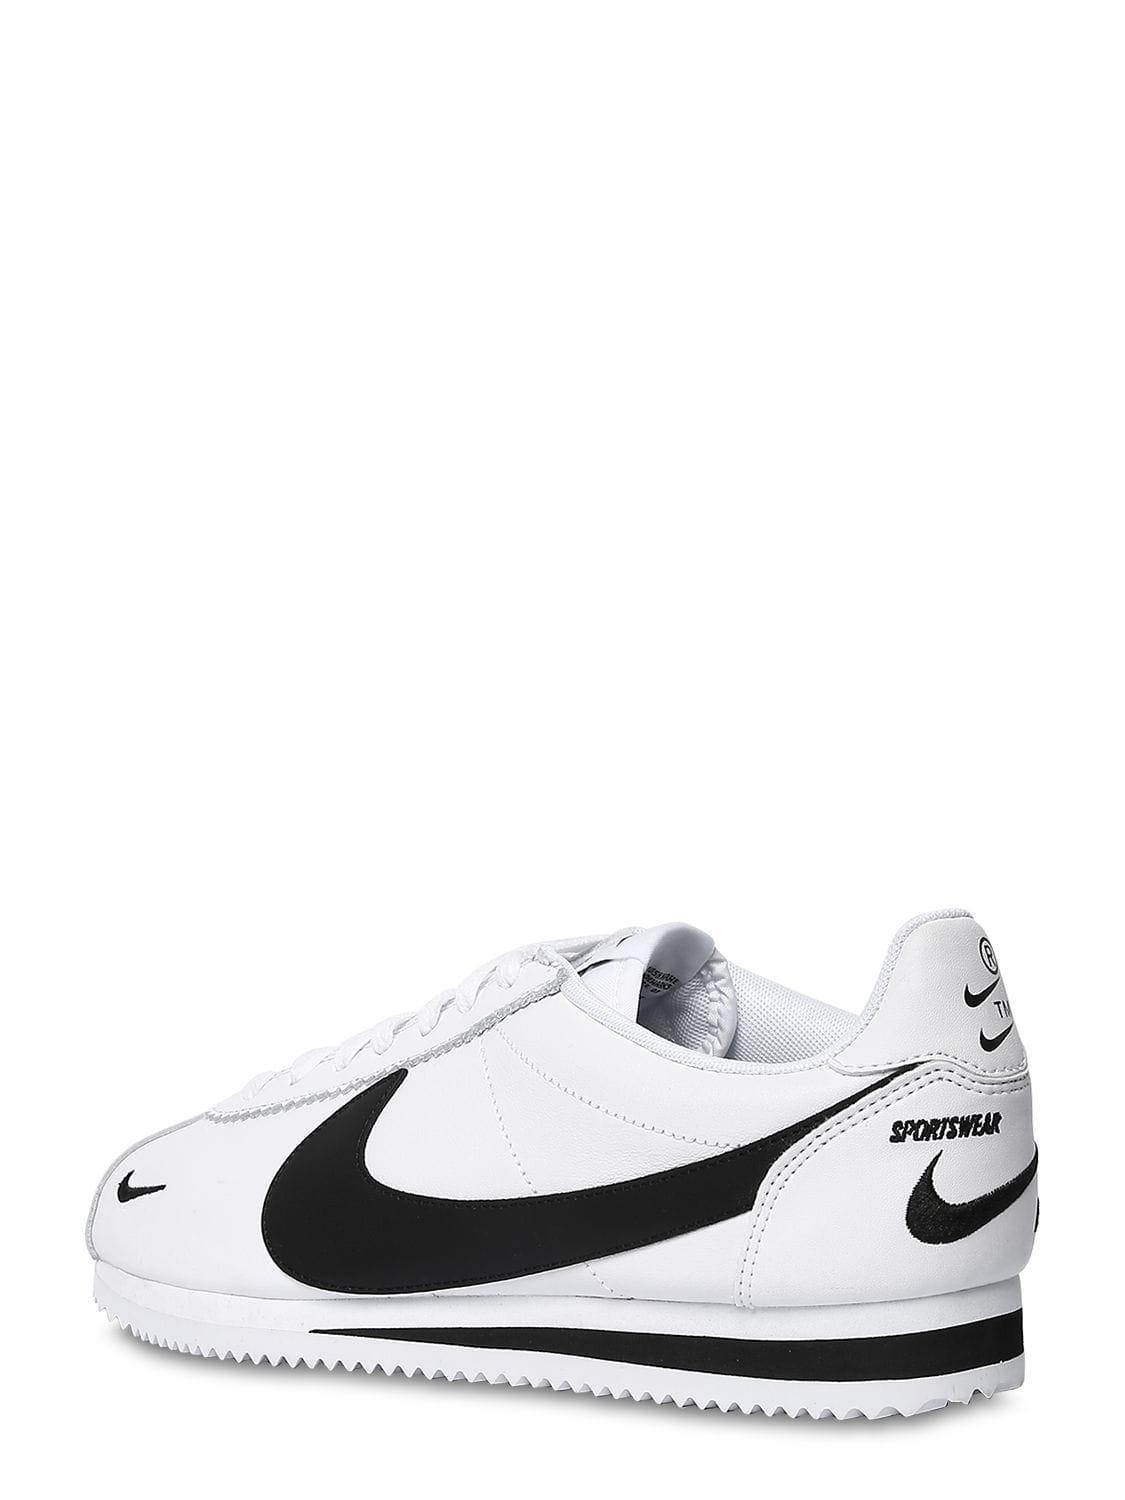 Nike Cortez Basic Leather Og Shoe in White for Men - Lyst